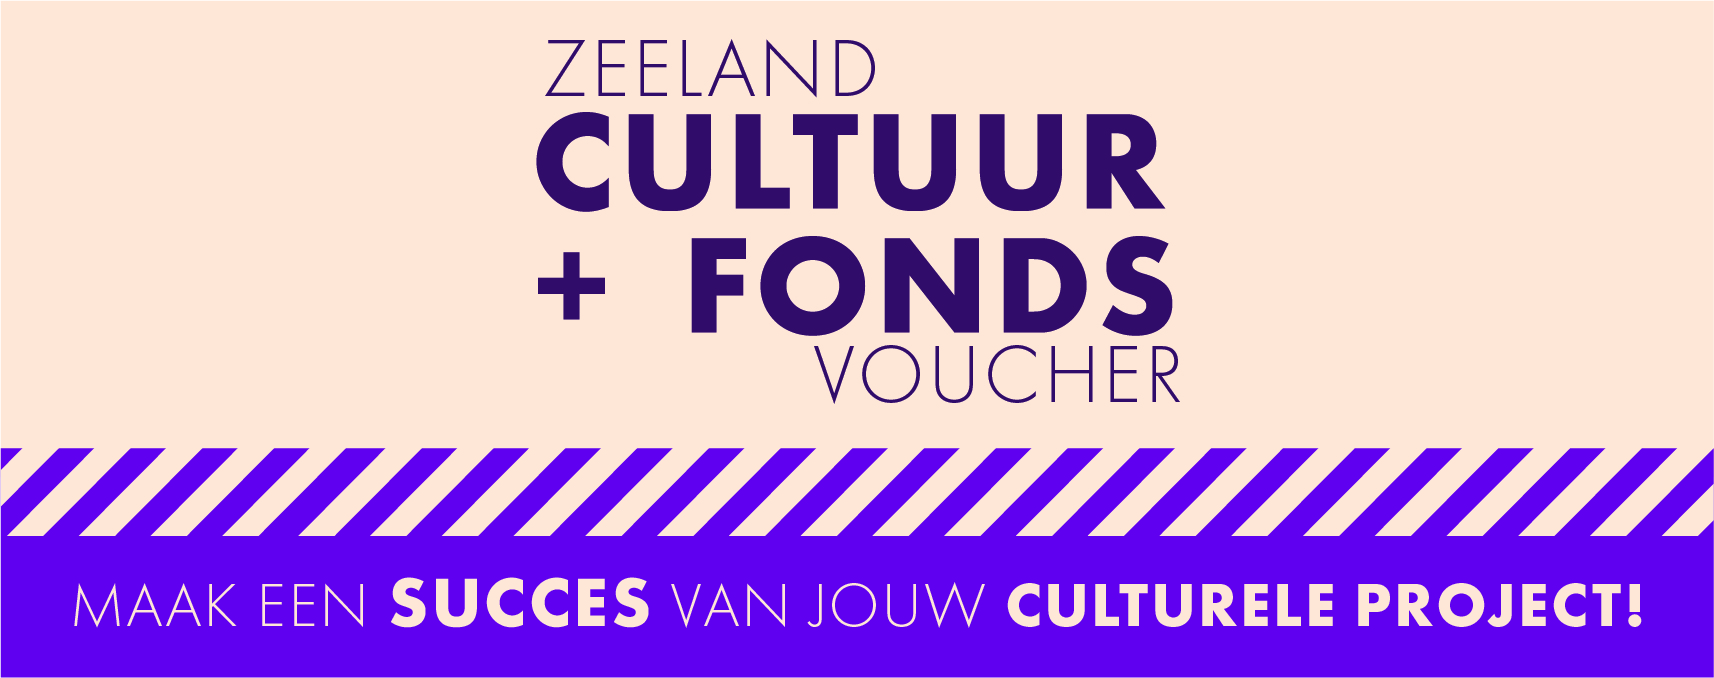 Zeeland Cultuur + Fonds Voucher